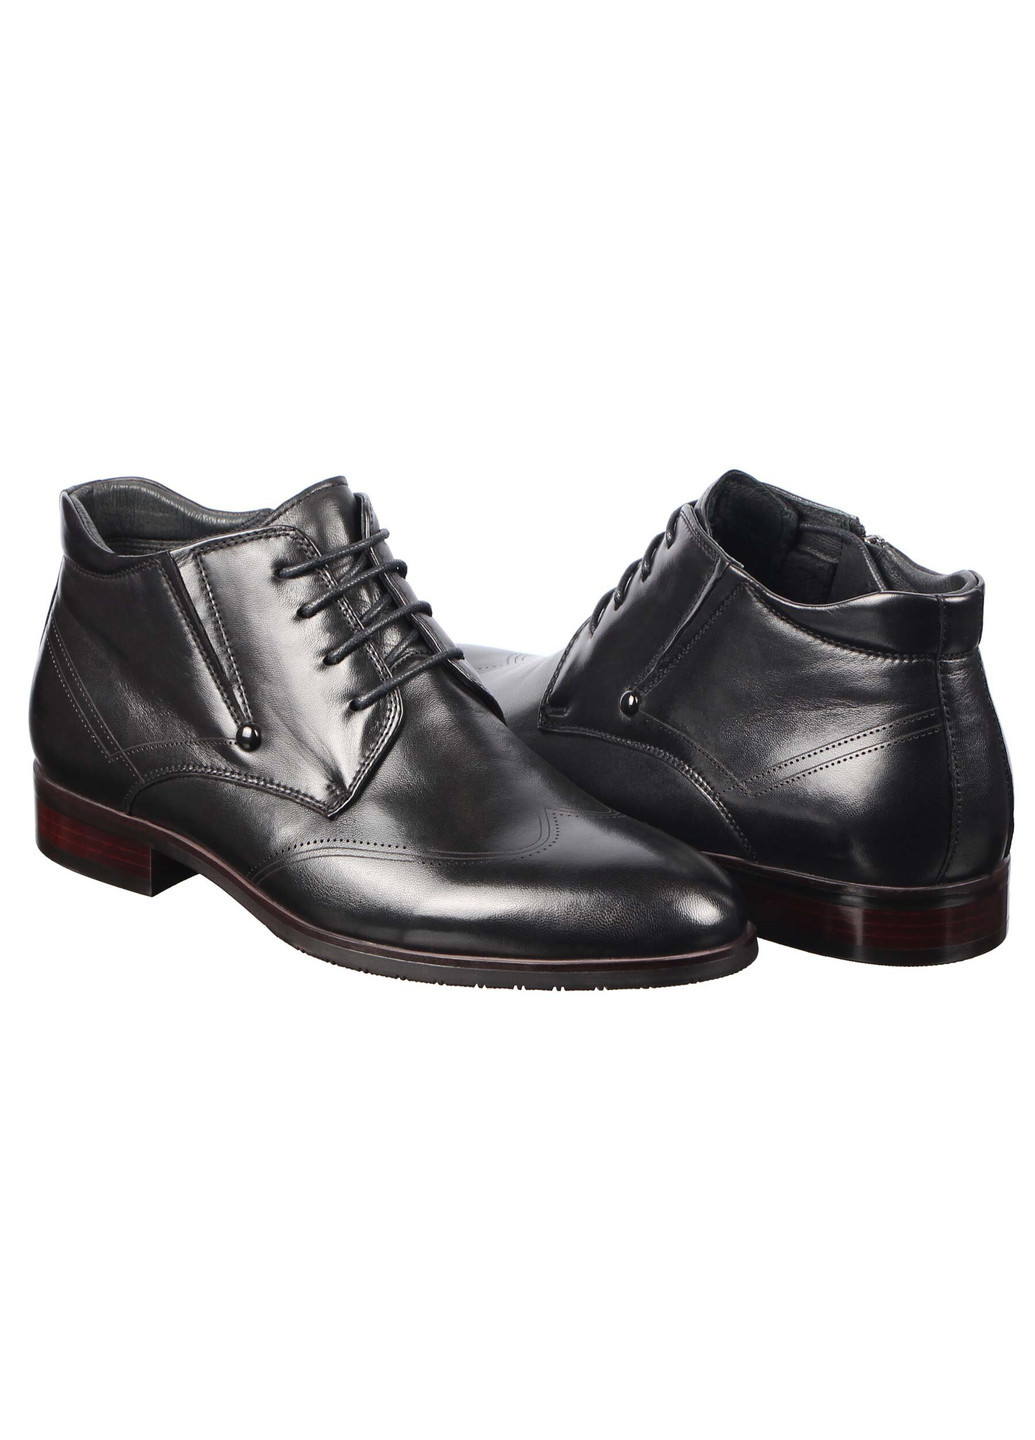 Черные осенние мужские классические ботинки 195419 Buts